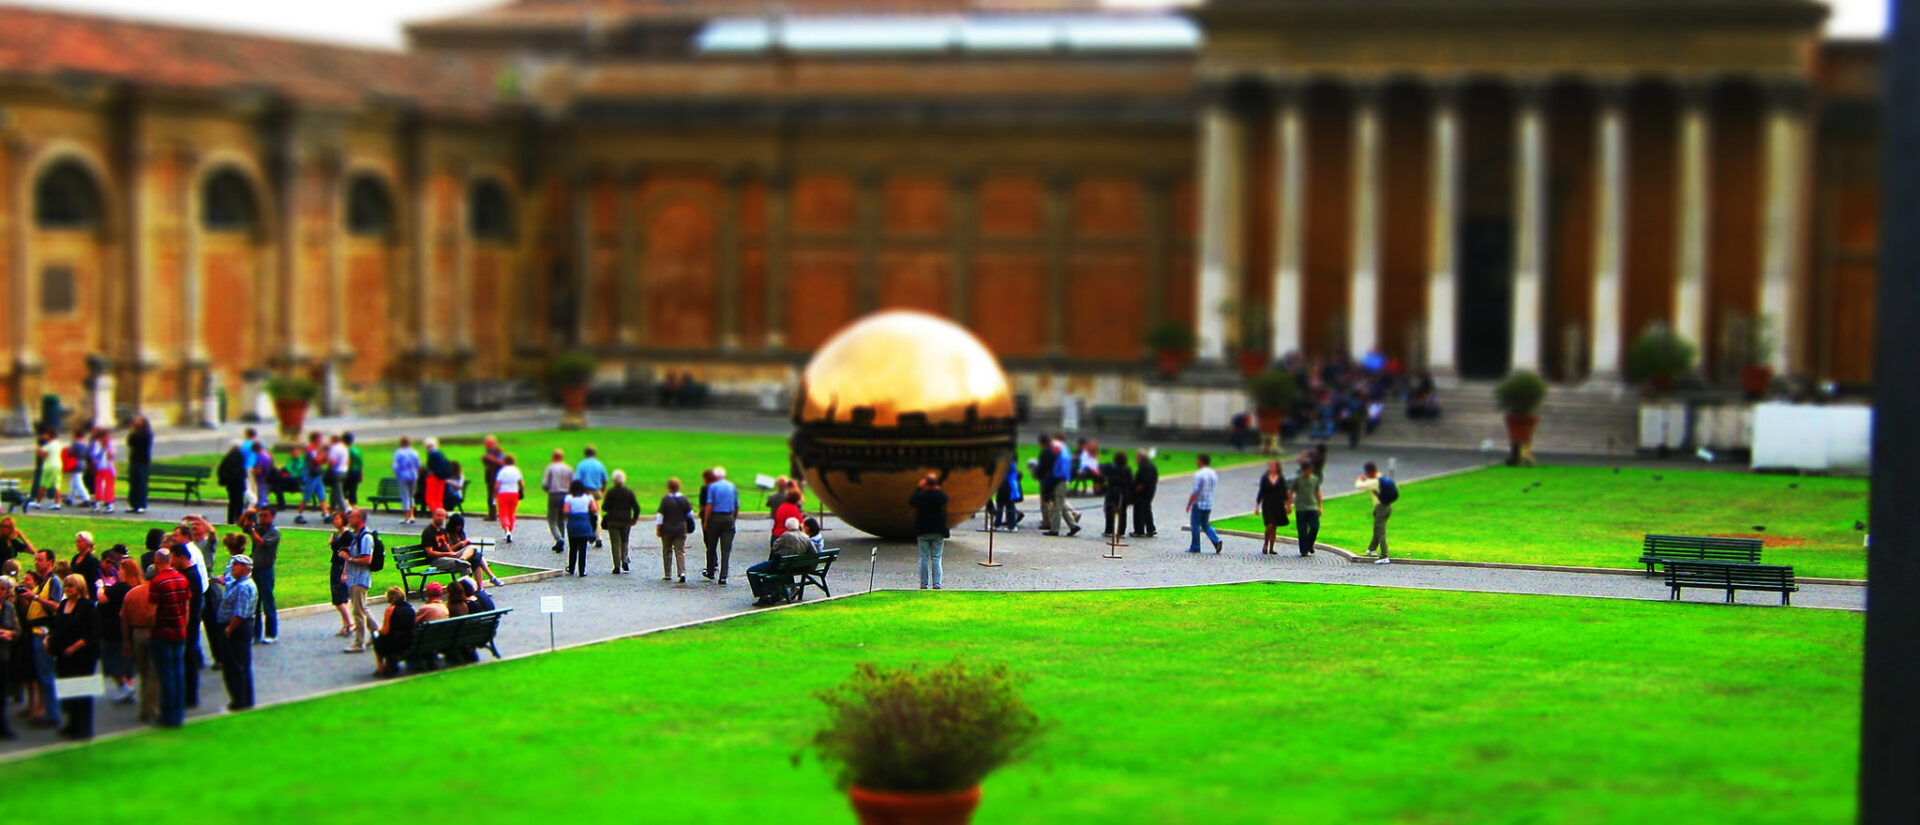 Les musées représentent une grosse source de revenus pour l'Etat du Vatican | © Armando/Flickr/CC BY-NC 2.0